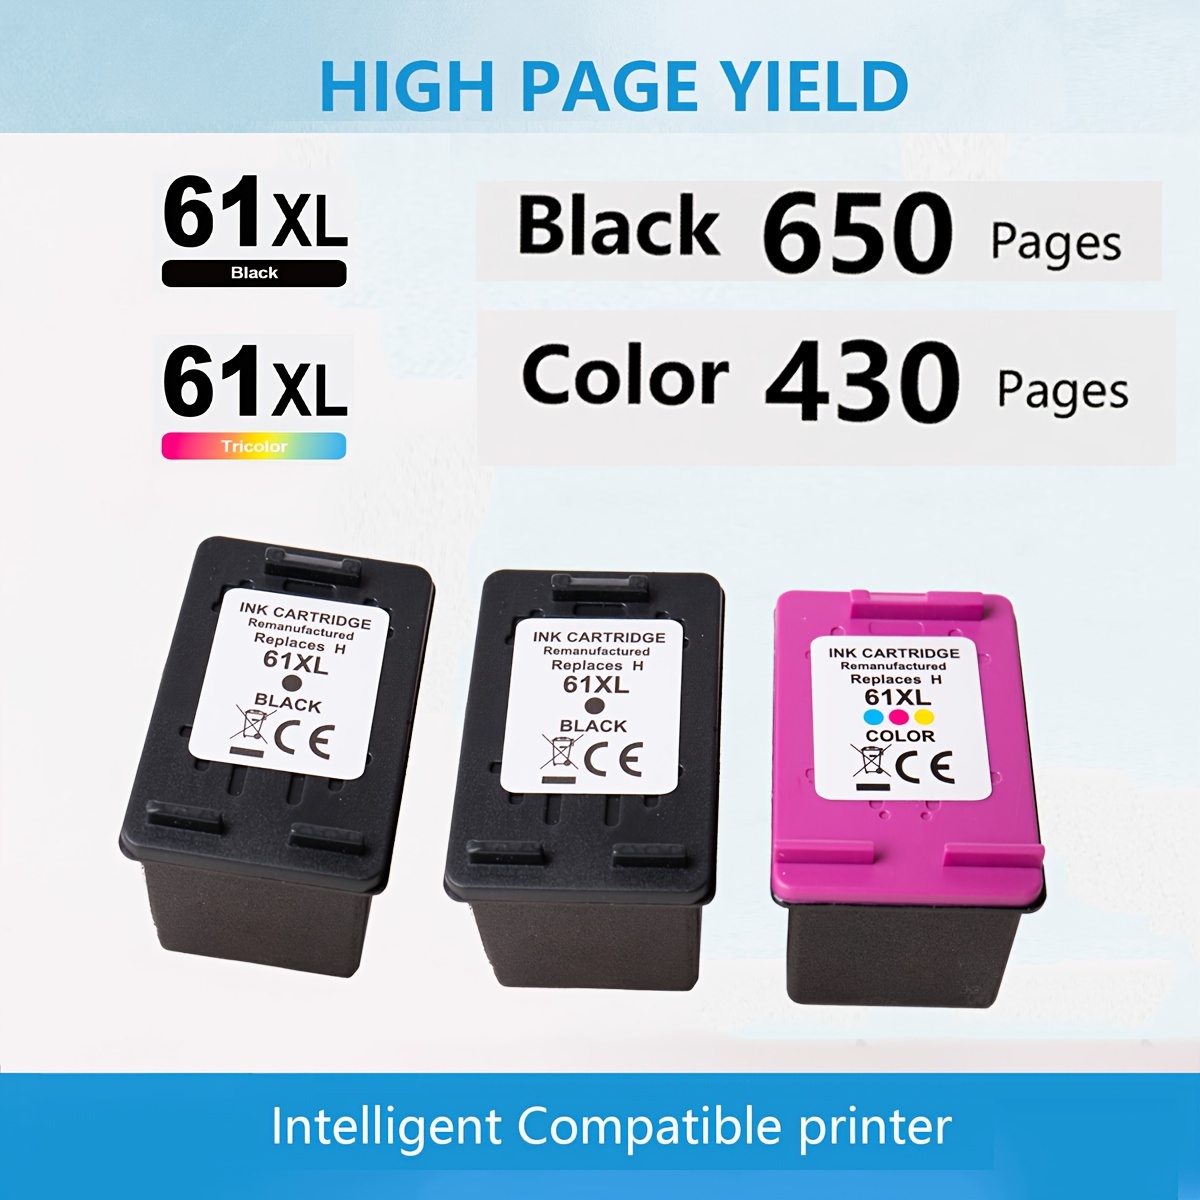 Kit de tinta Universal para impresora, cartuchos de tinta recargables de  250ml, color negro, Compatible con impresoras HP, Canon, Epson, Brother,  Deskjet